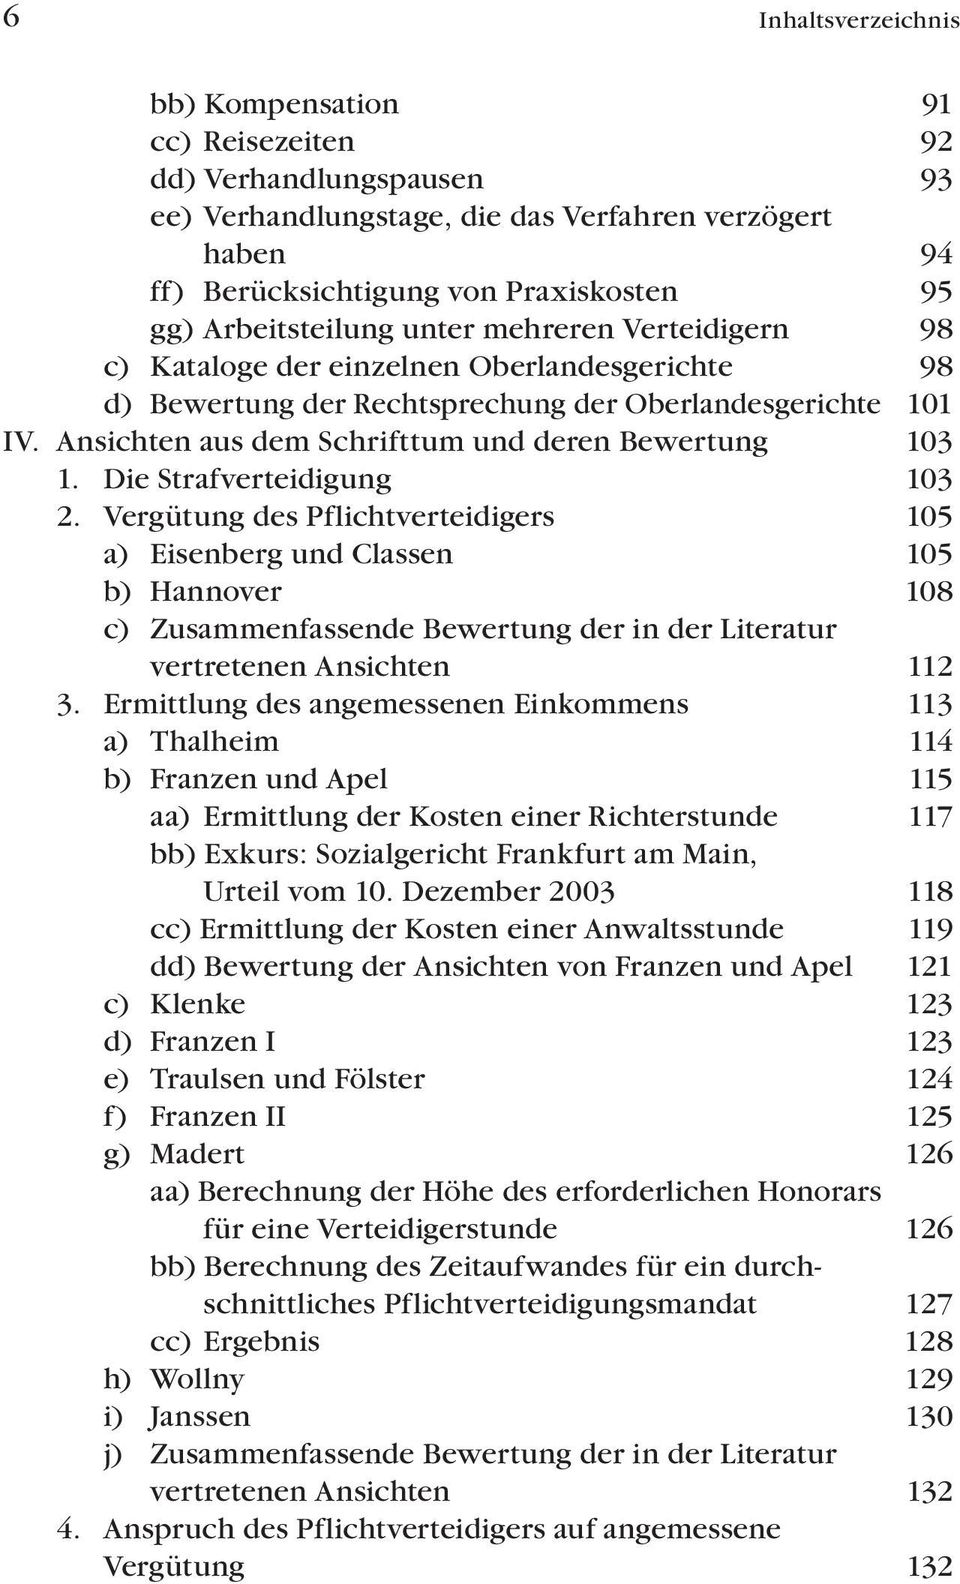 Die Strafverteidigung 103 2. Vergütung des Pflichtverteidigers 105 a) Eisenberg und Classen 105 b) Hannover 108 c) Zusammenfassende Bewertung der in der Literatur vertretenen Ansichten 112 3.